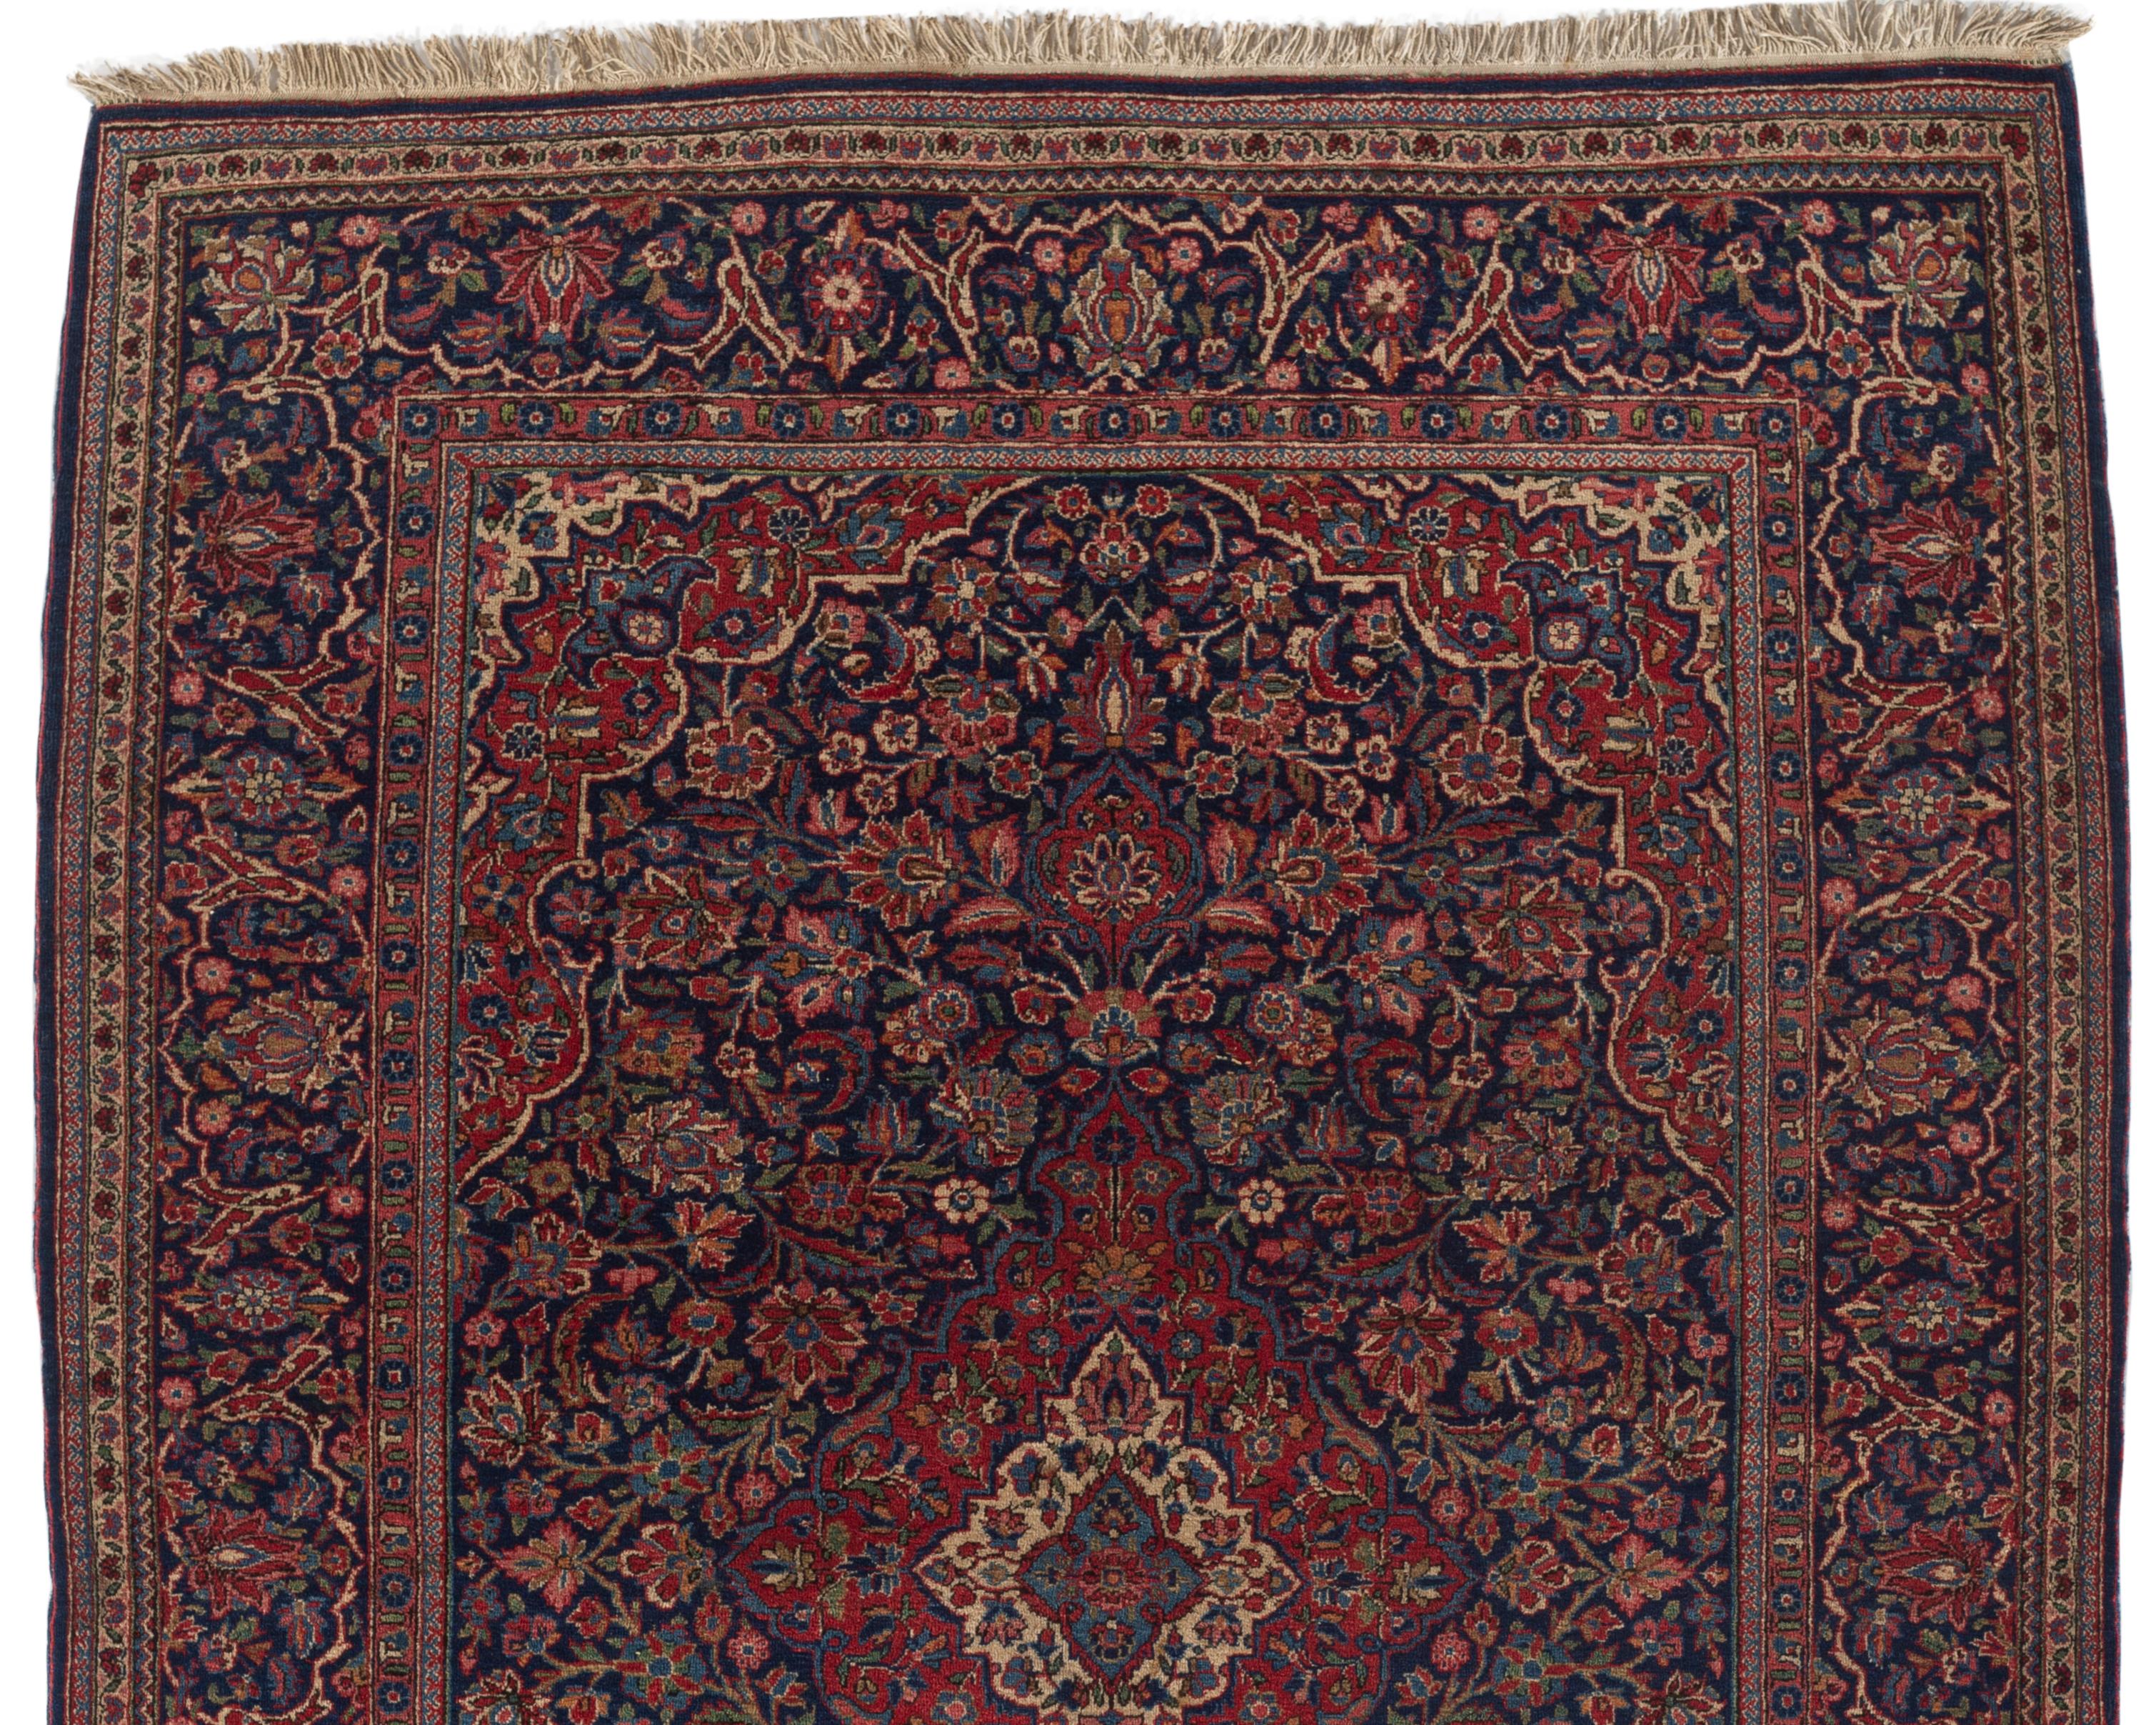 Vintage Byzan Kashan, circa 1920. Ce tapis persan tissé à la main au Kashan présente un magnifique champ central bleu profond rempli d'éléments floraux entourant un médaillon central. La bordure principale complète parfaitement cette image. Taille :